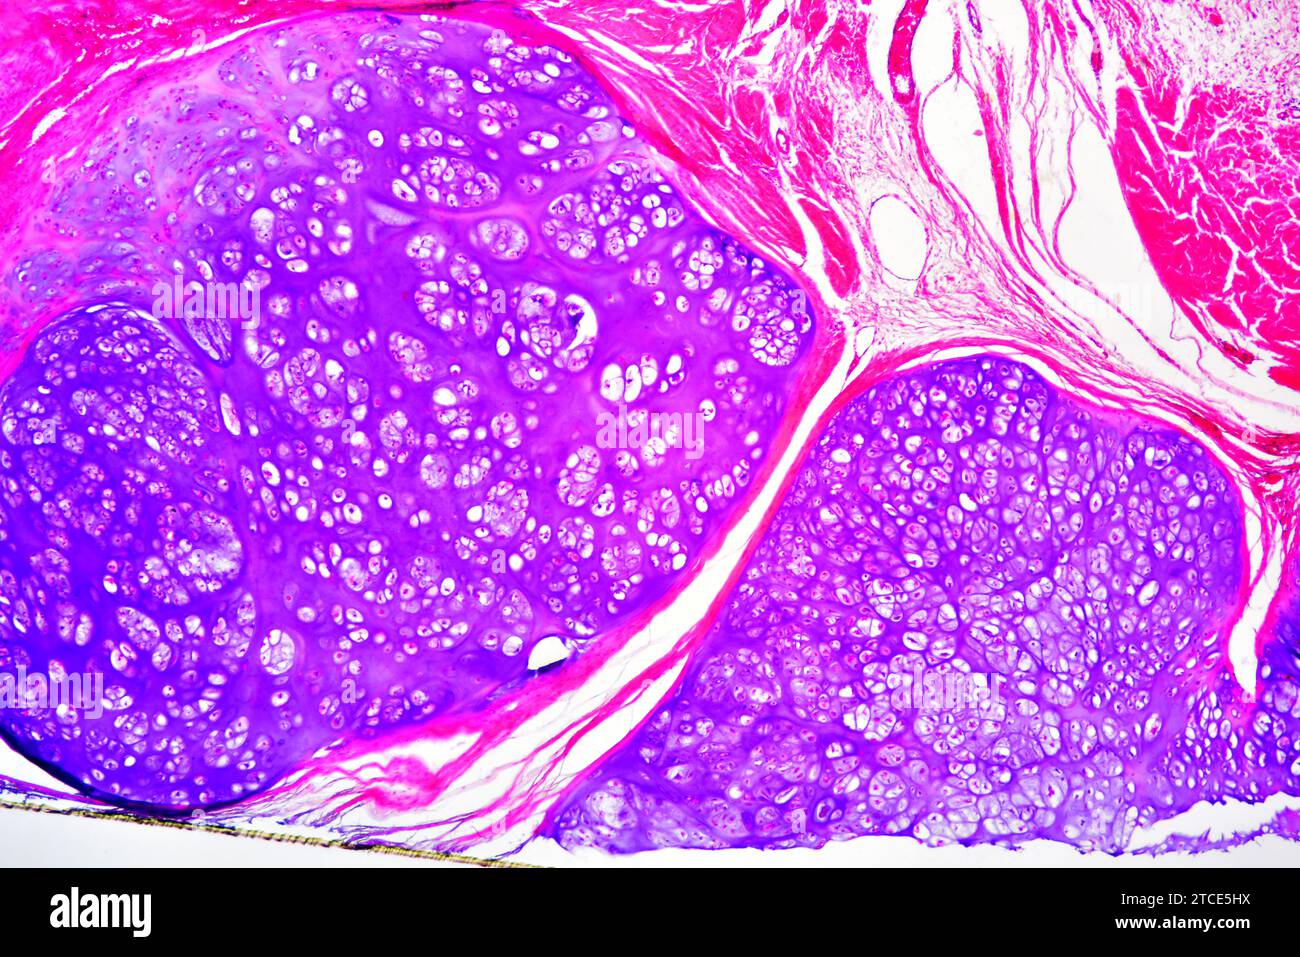 Chondrosoma osseux pubiens humains (tumeur bénigne) montrant des chondrocytes et une matrice. Microscope optique X40. Banque D'Images